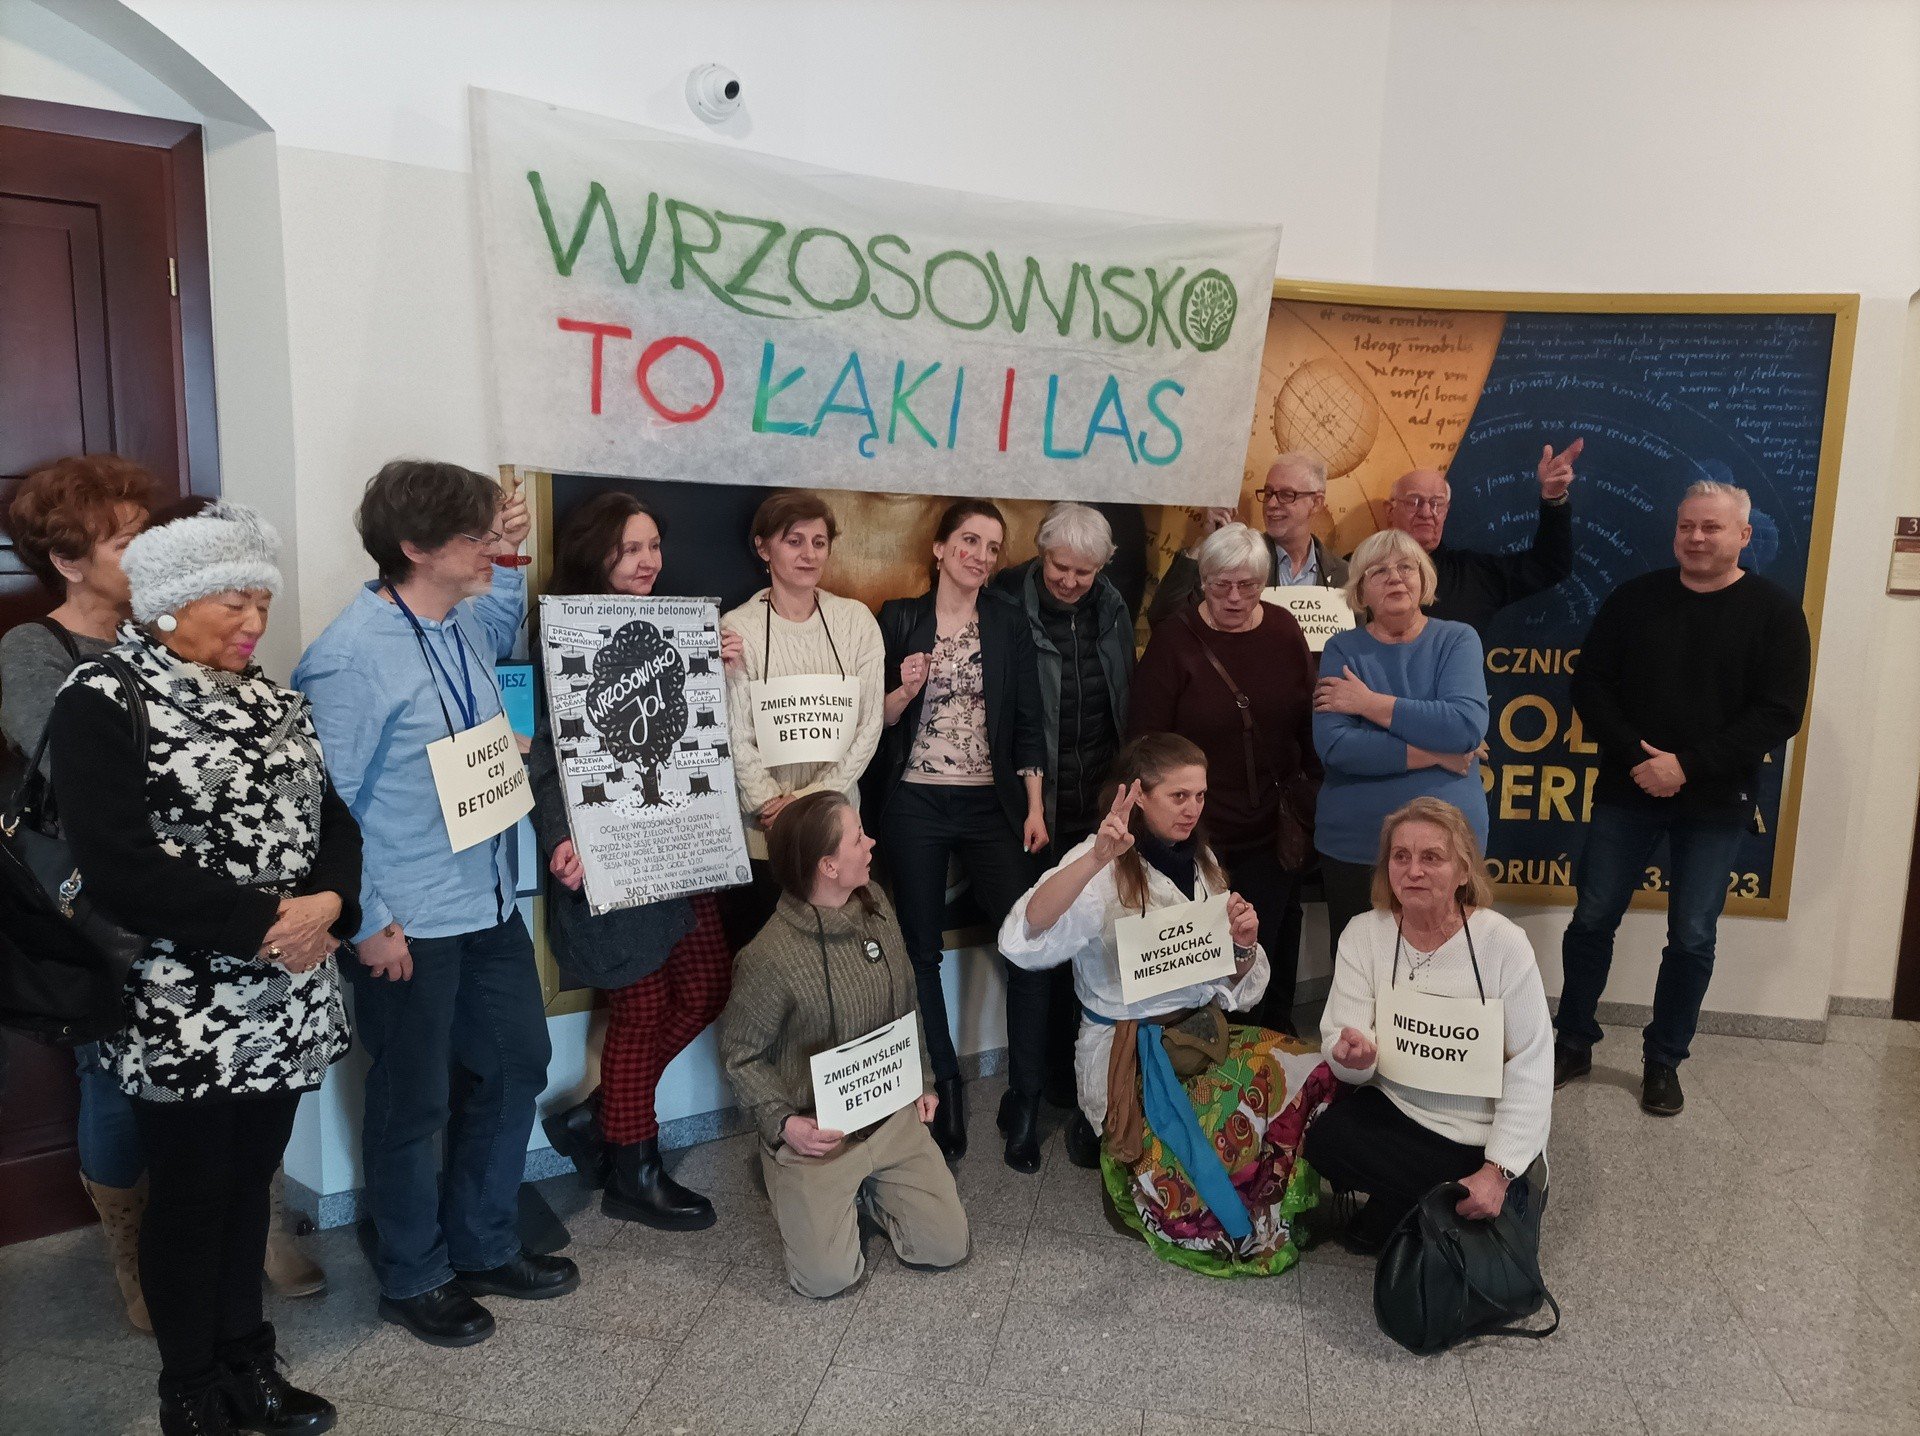 Toruńscy radni zdecydowali w sprawie Wrzosowiska. Jak głosowali?